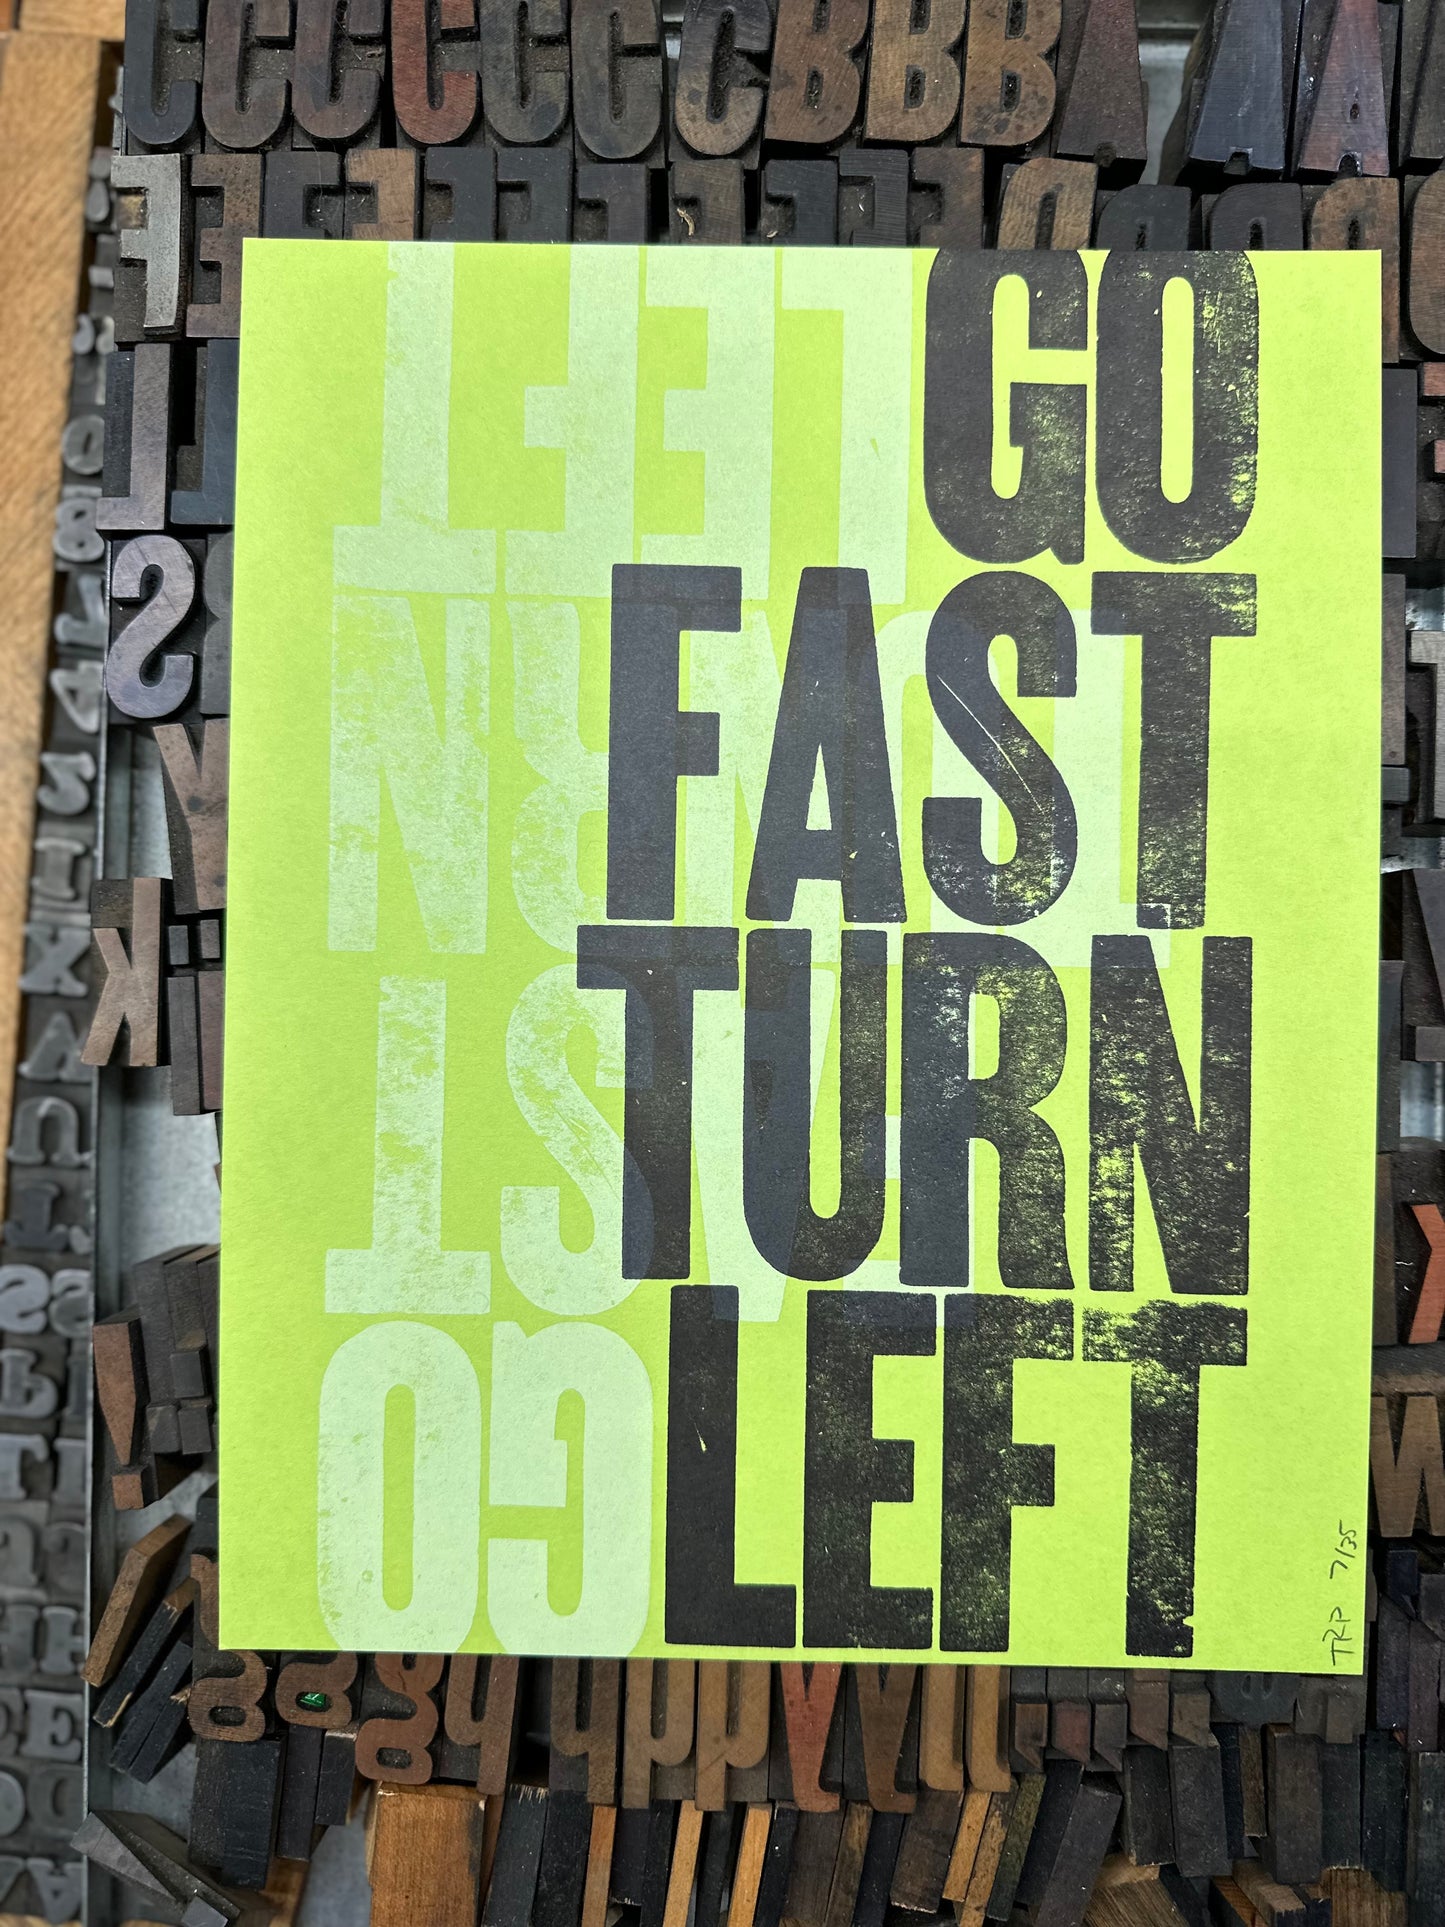 Go Fast Turn Left